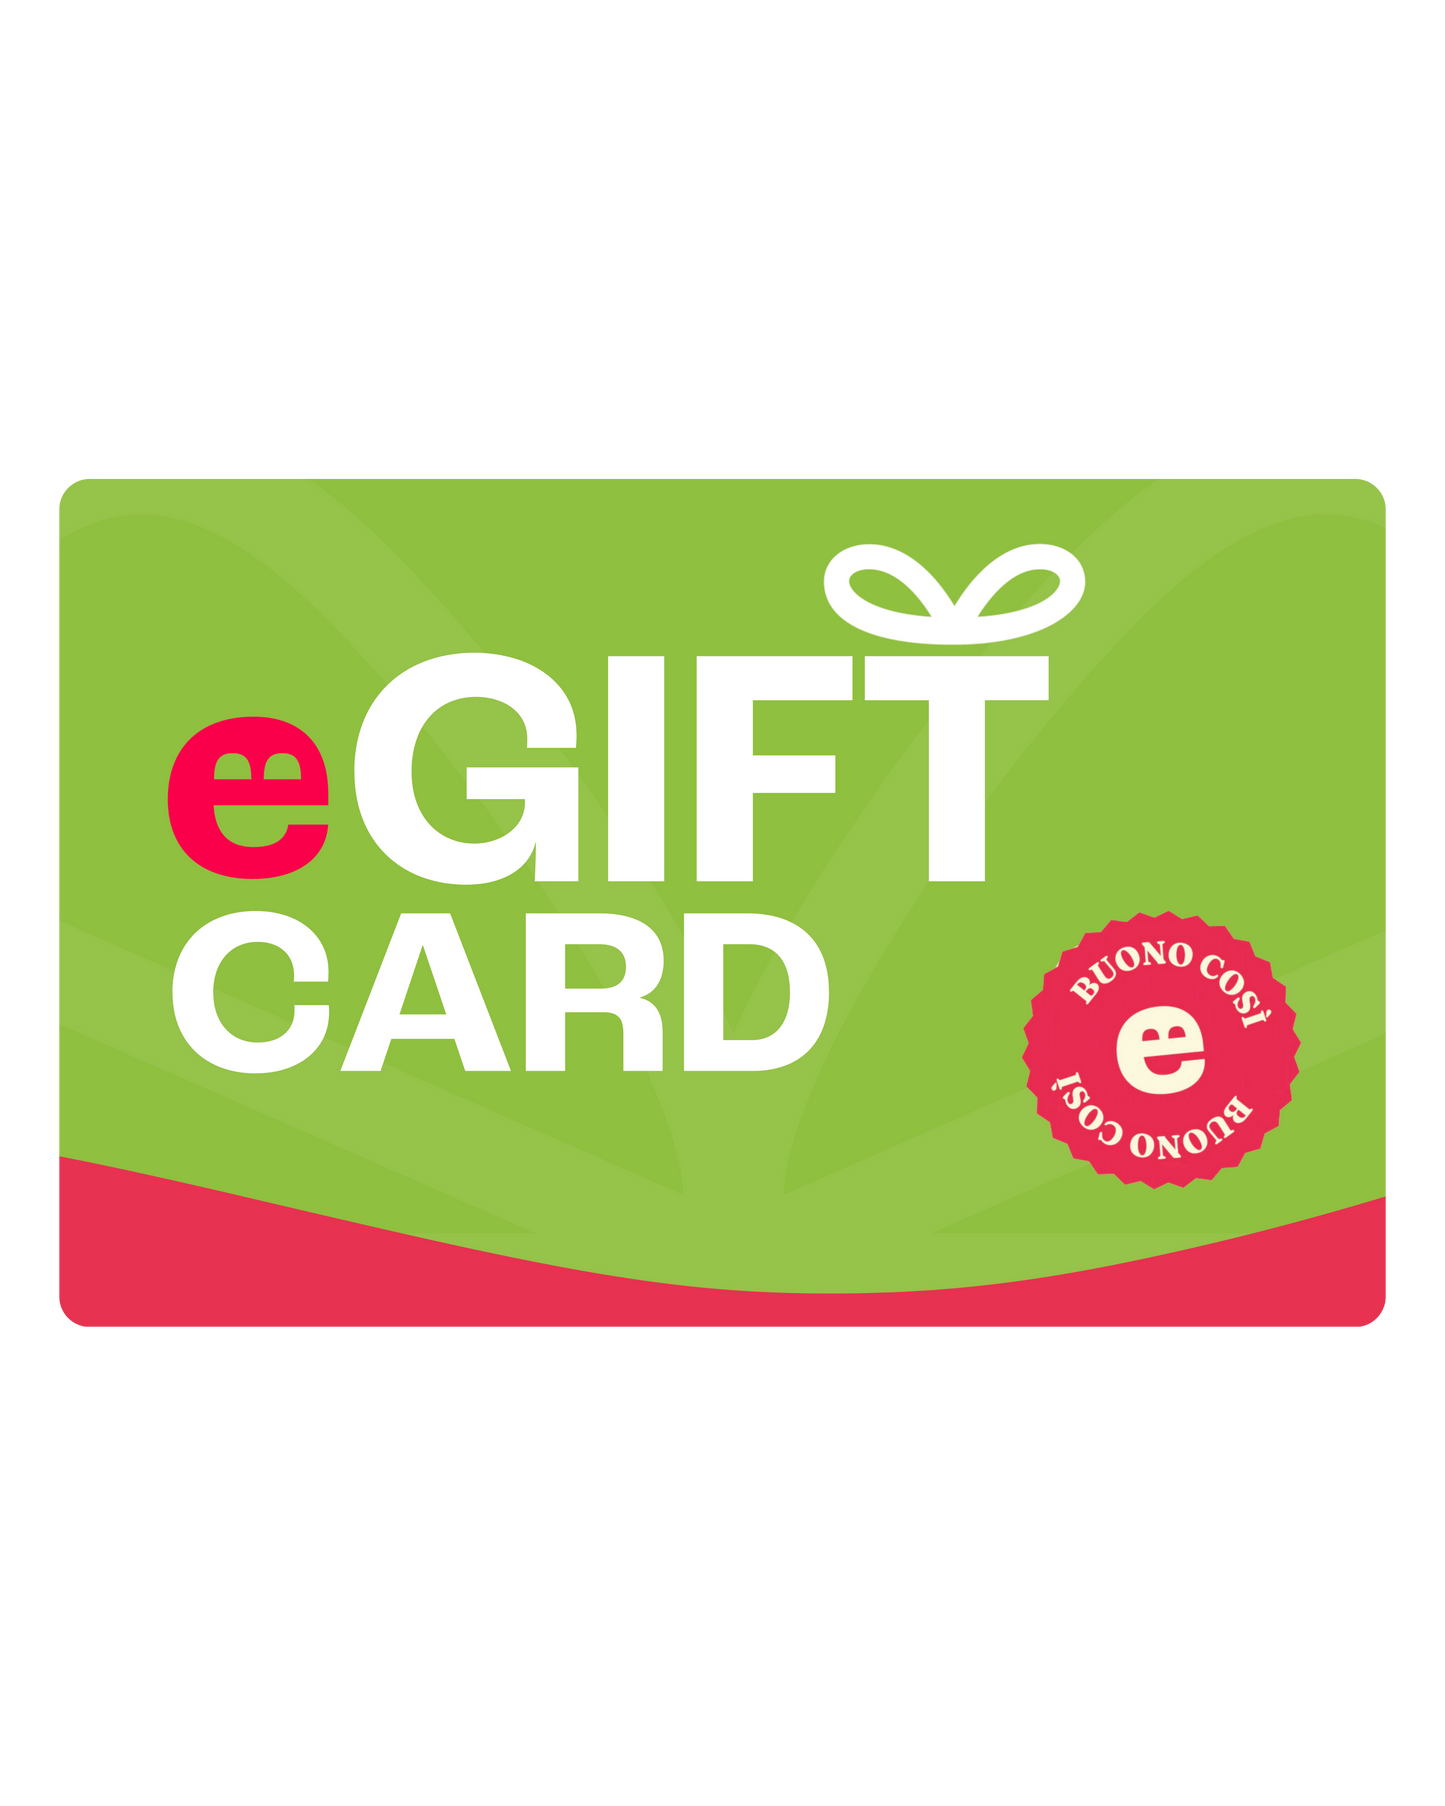 E-Gift Card Glusen